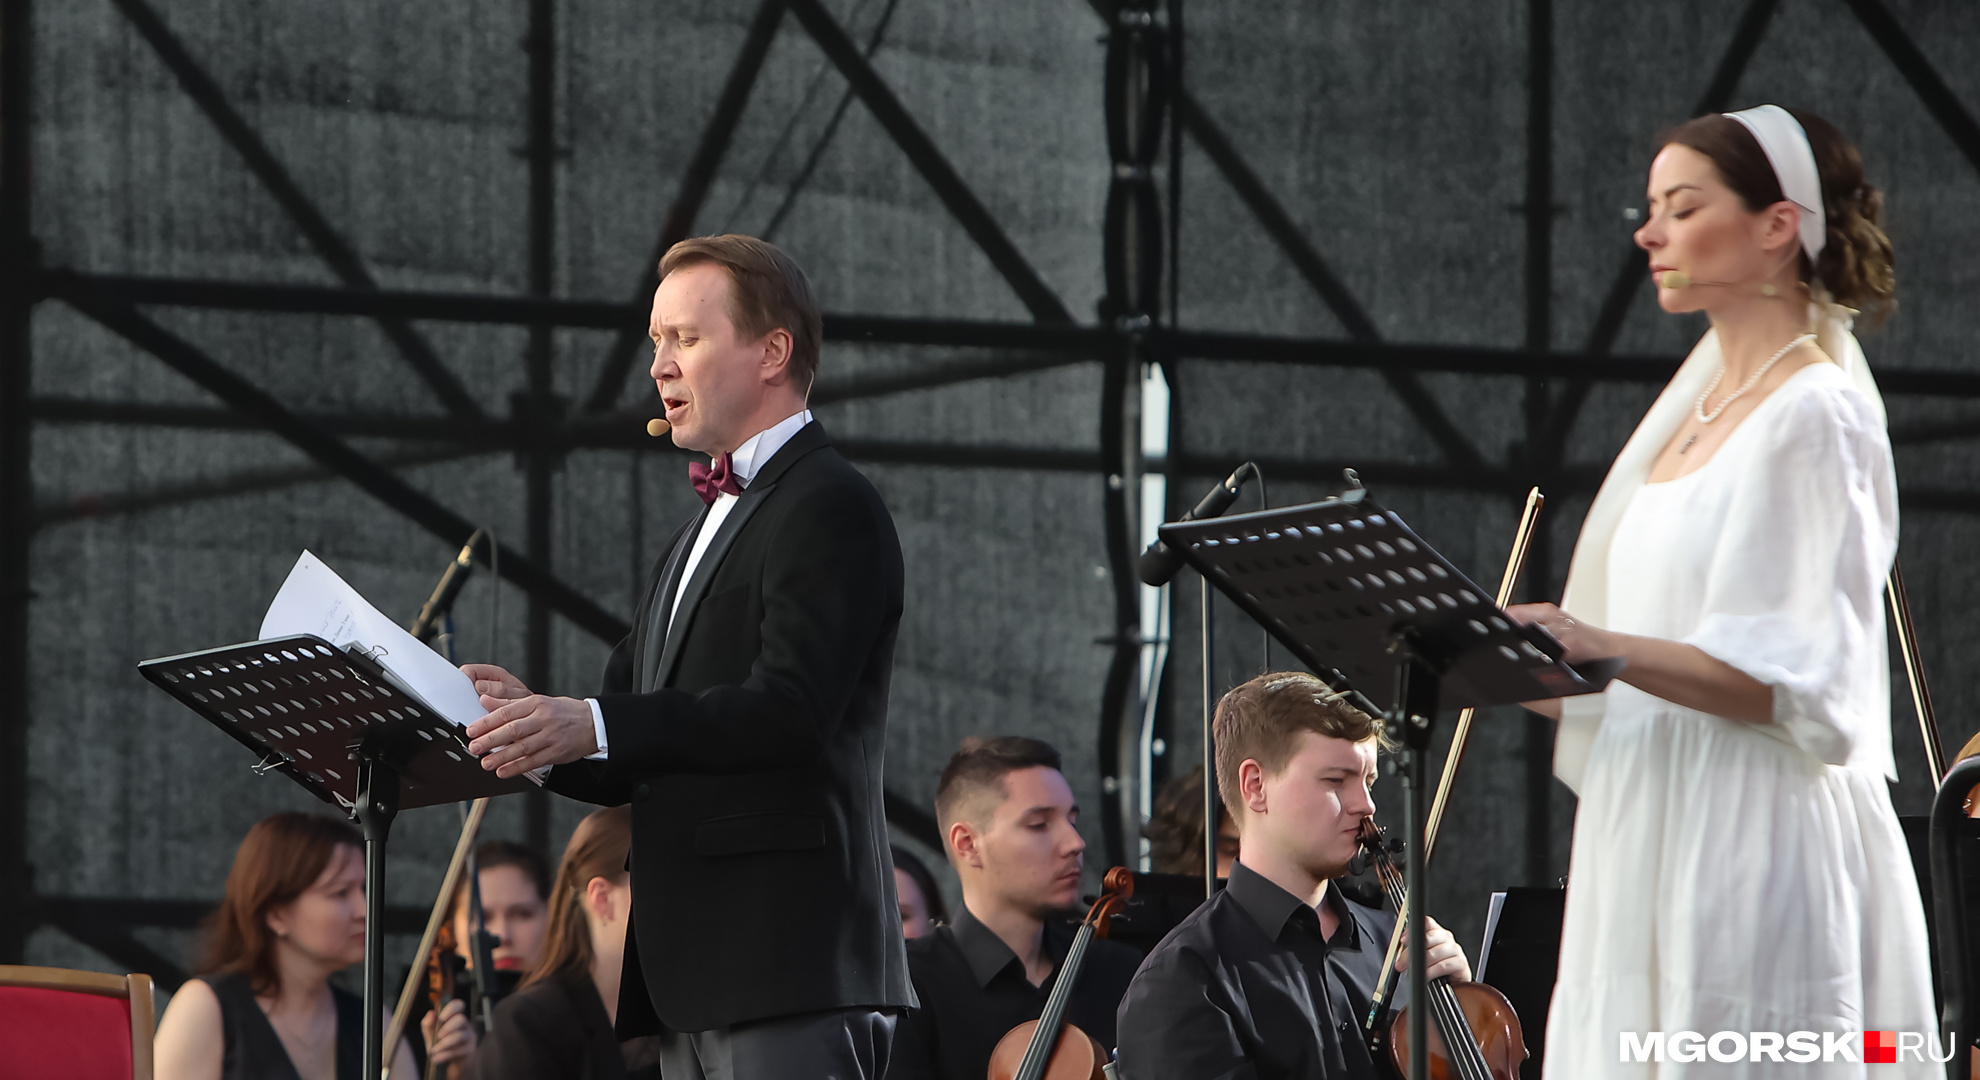 Артисты выступали в сопровождении симфонического оркестра Челябинской области под управлением Адика Абдурахманова